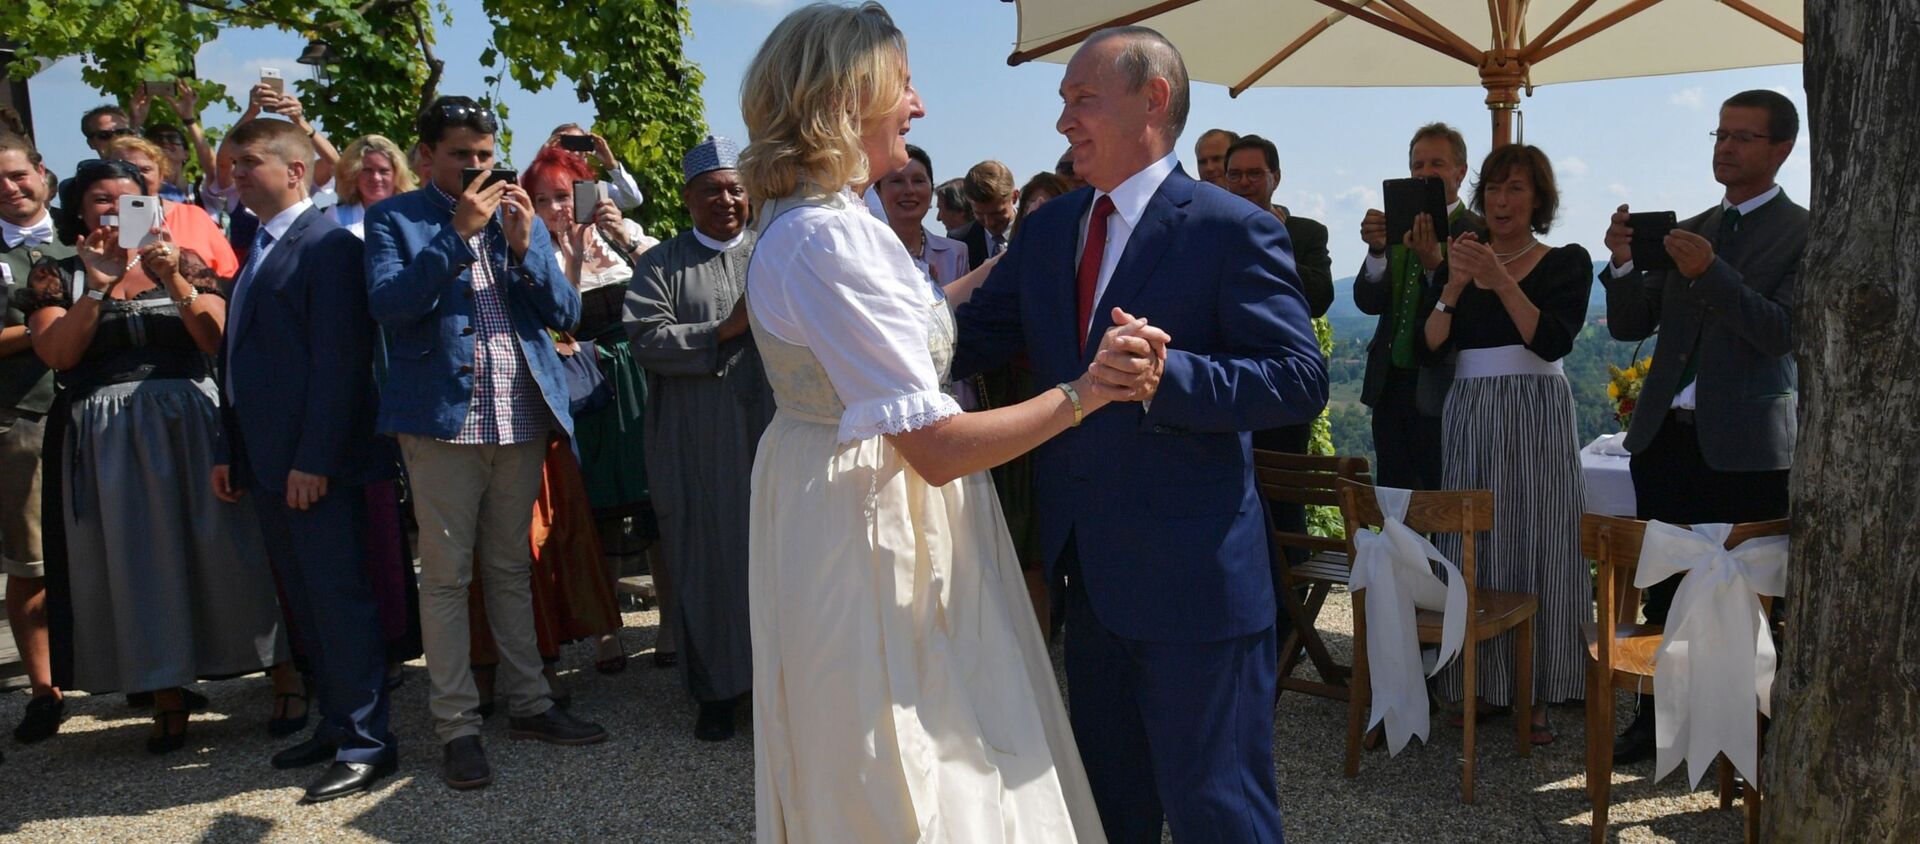 Avusturya Dışişleri Bakanı Karin Kneissl'ın düğününe katılan Putin - Sputnik Türkiye, 1920, 26.08.2018